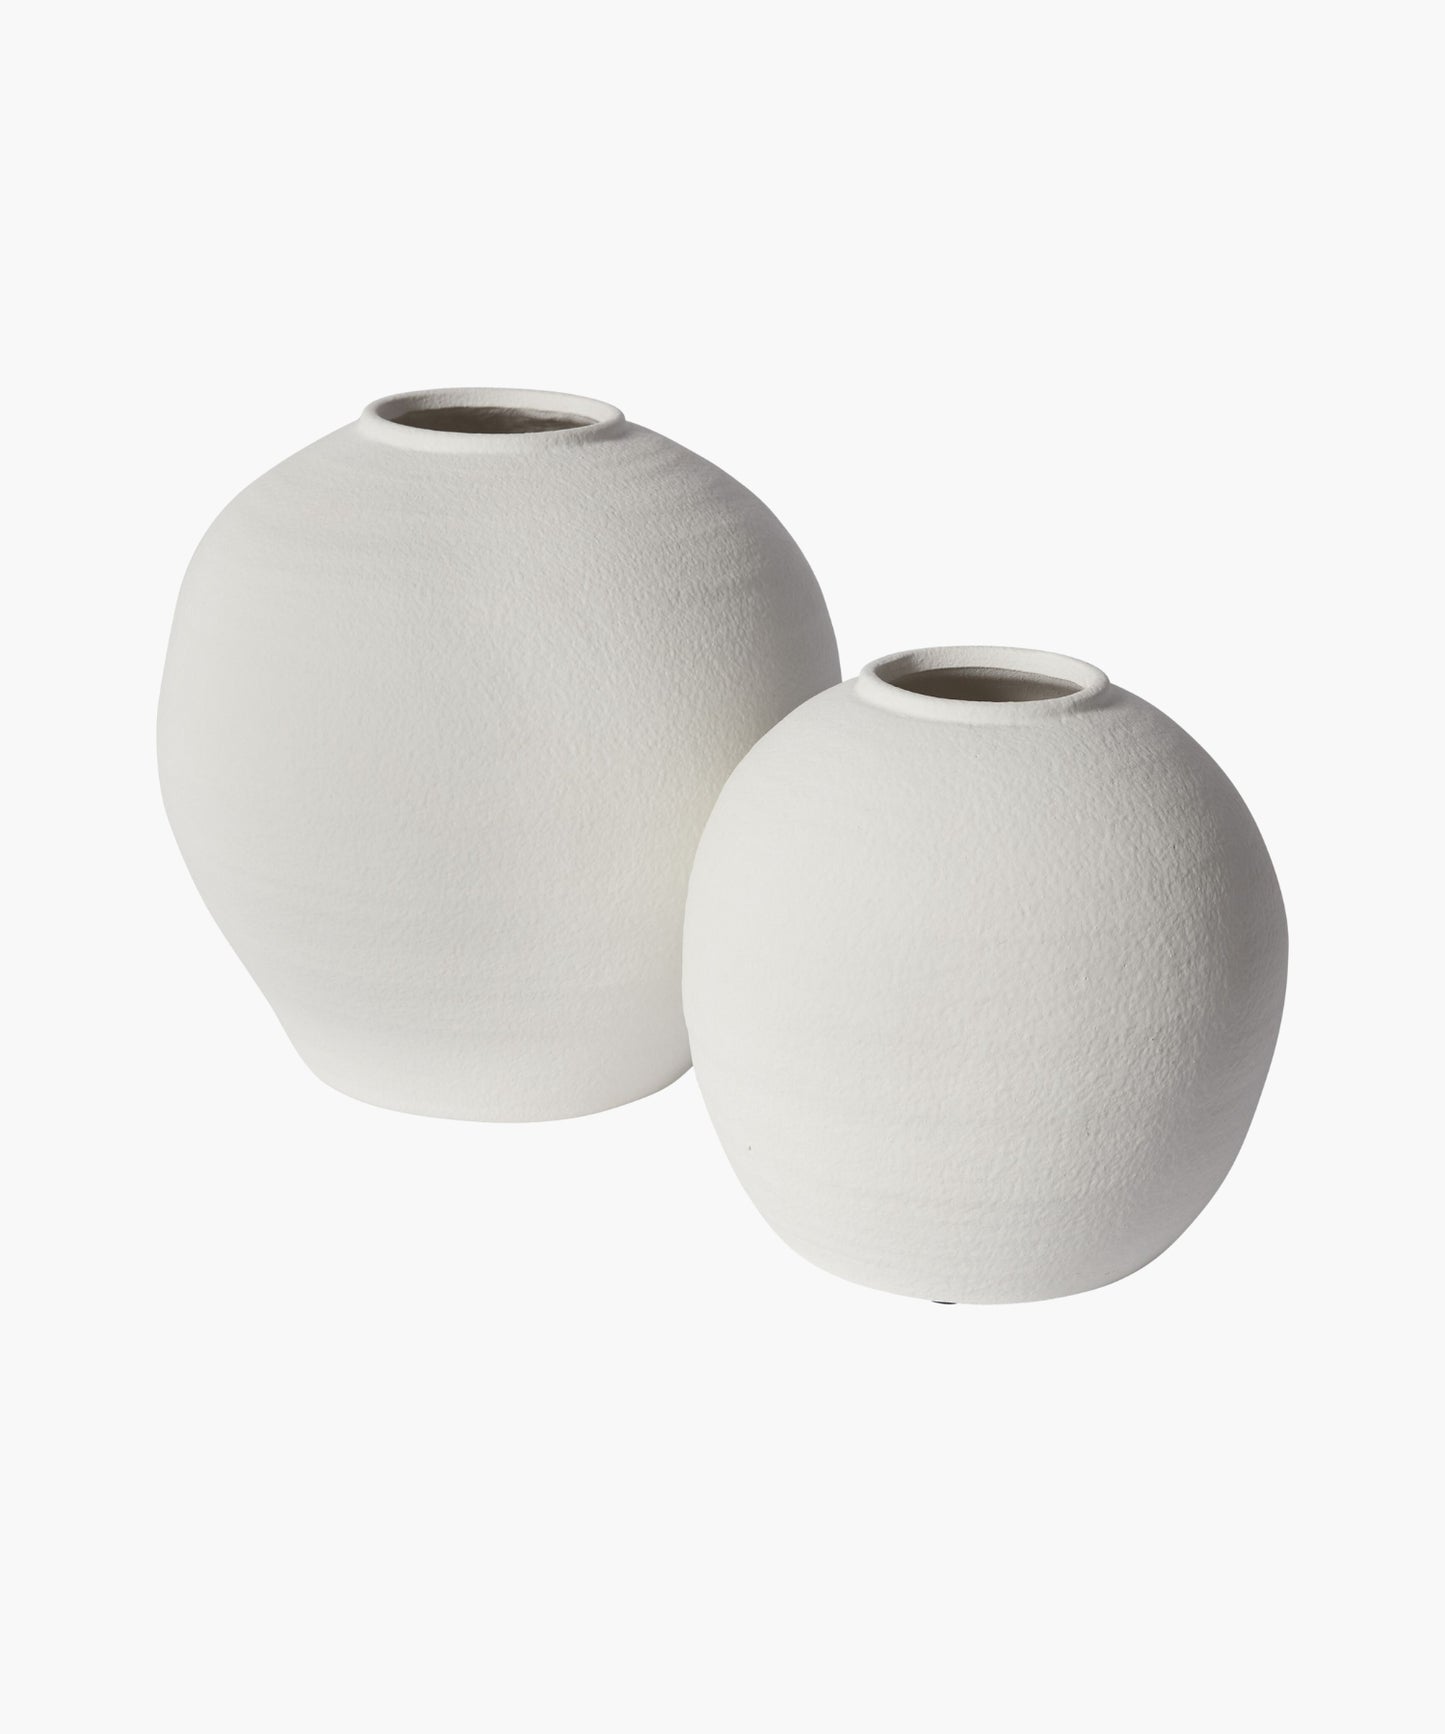 Konos Vase, 2 sizes